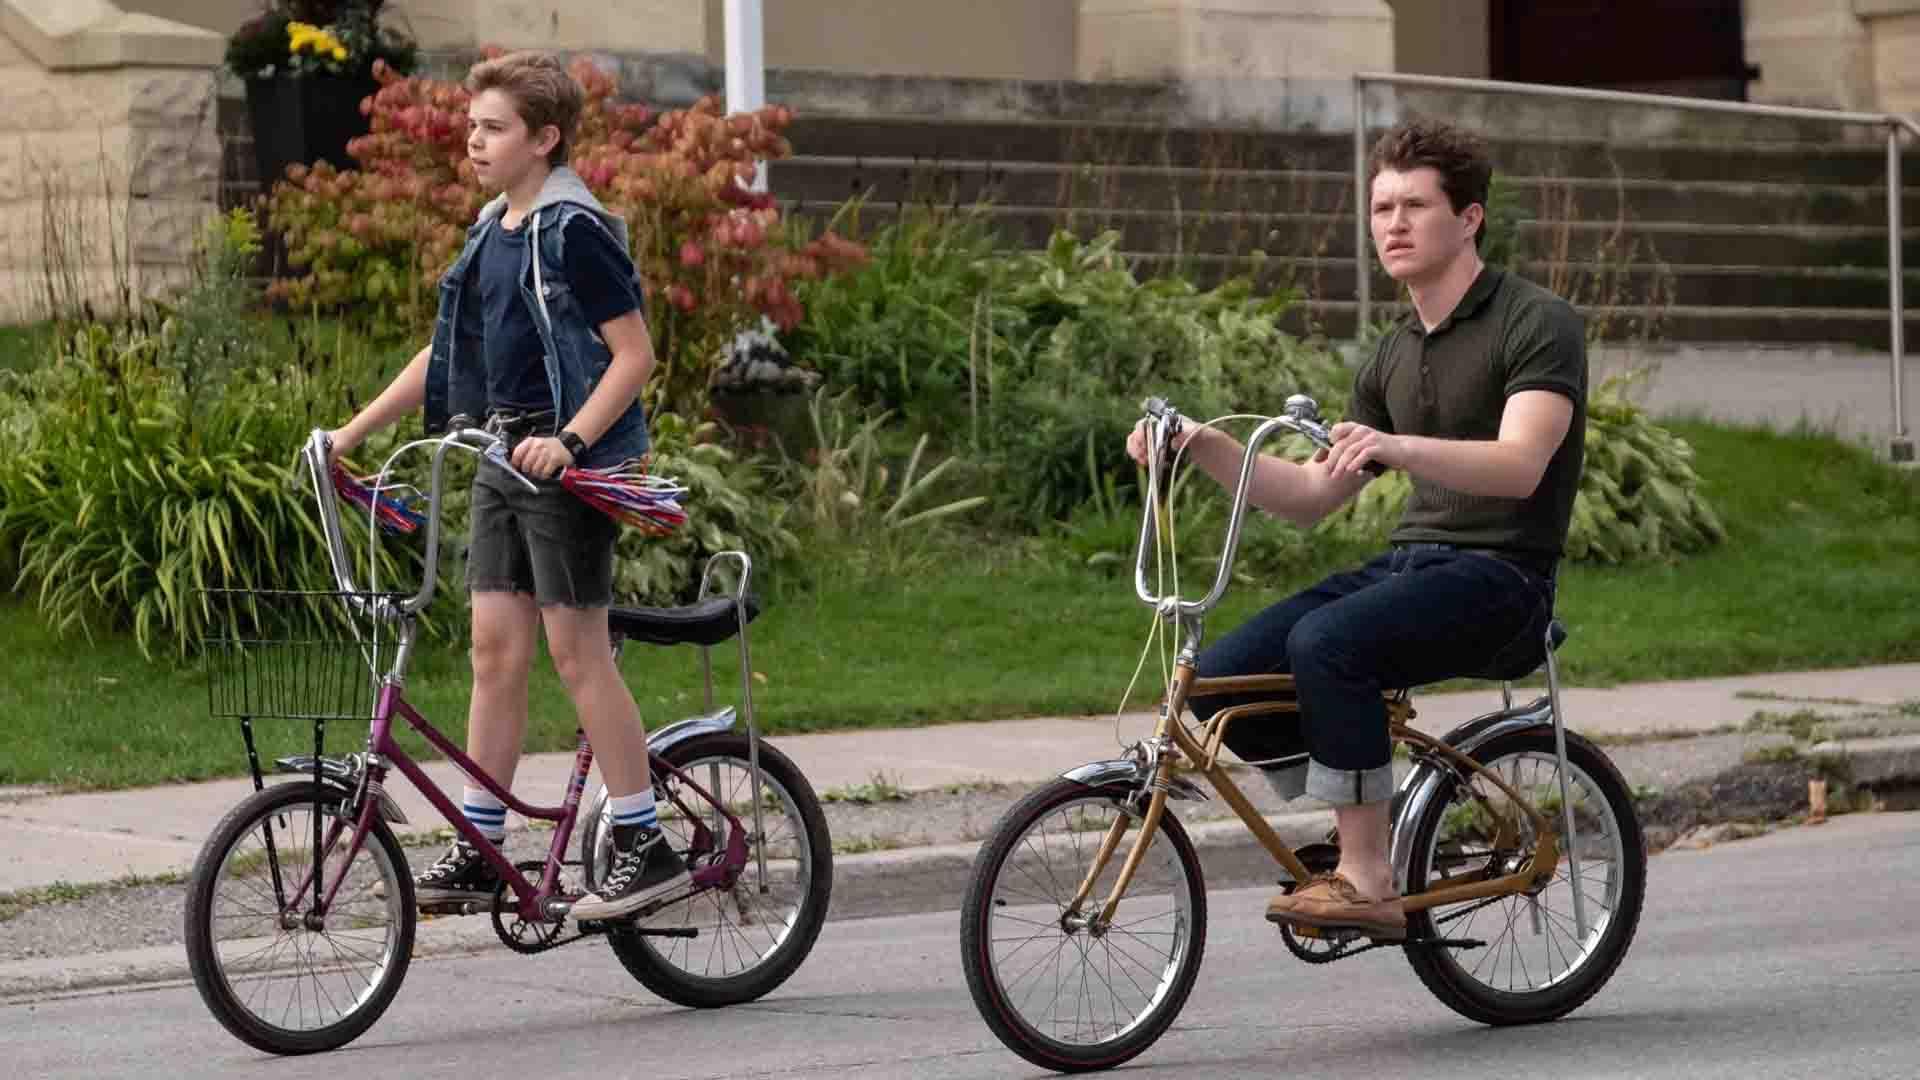 روهن کمپبل و الکساندر الیوت در حال دوچرخه سواری در سریال The Hardy Boys